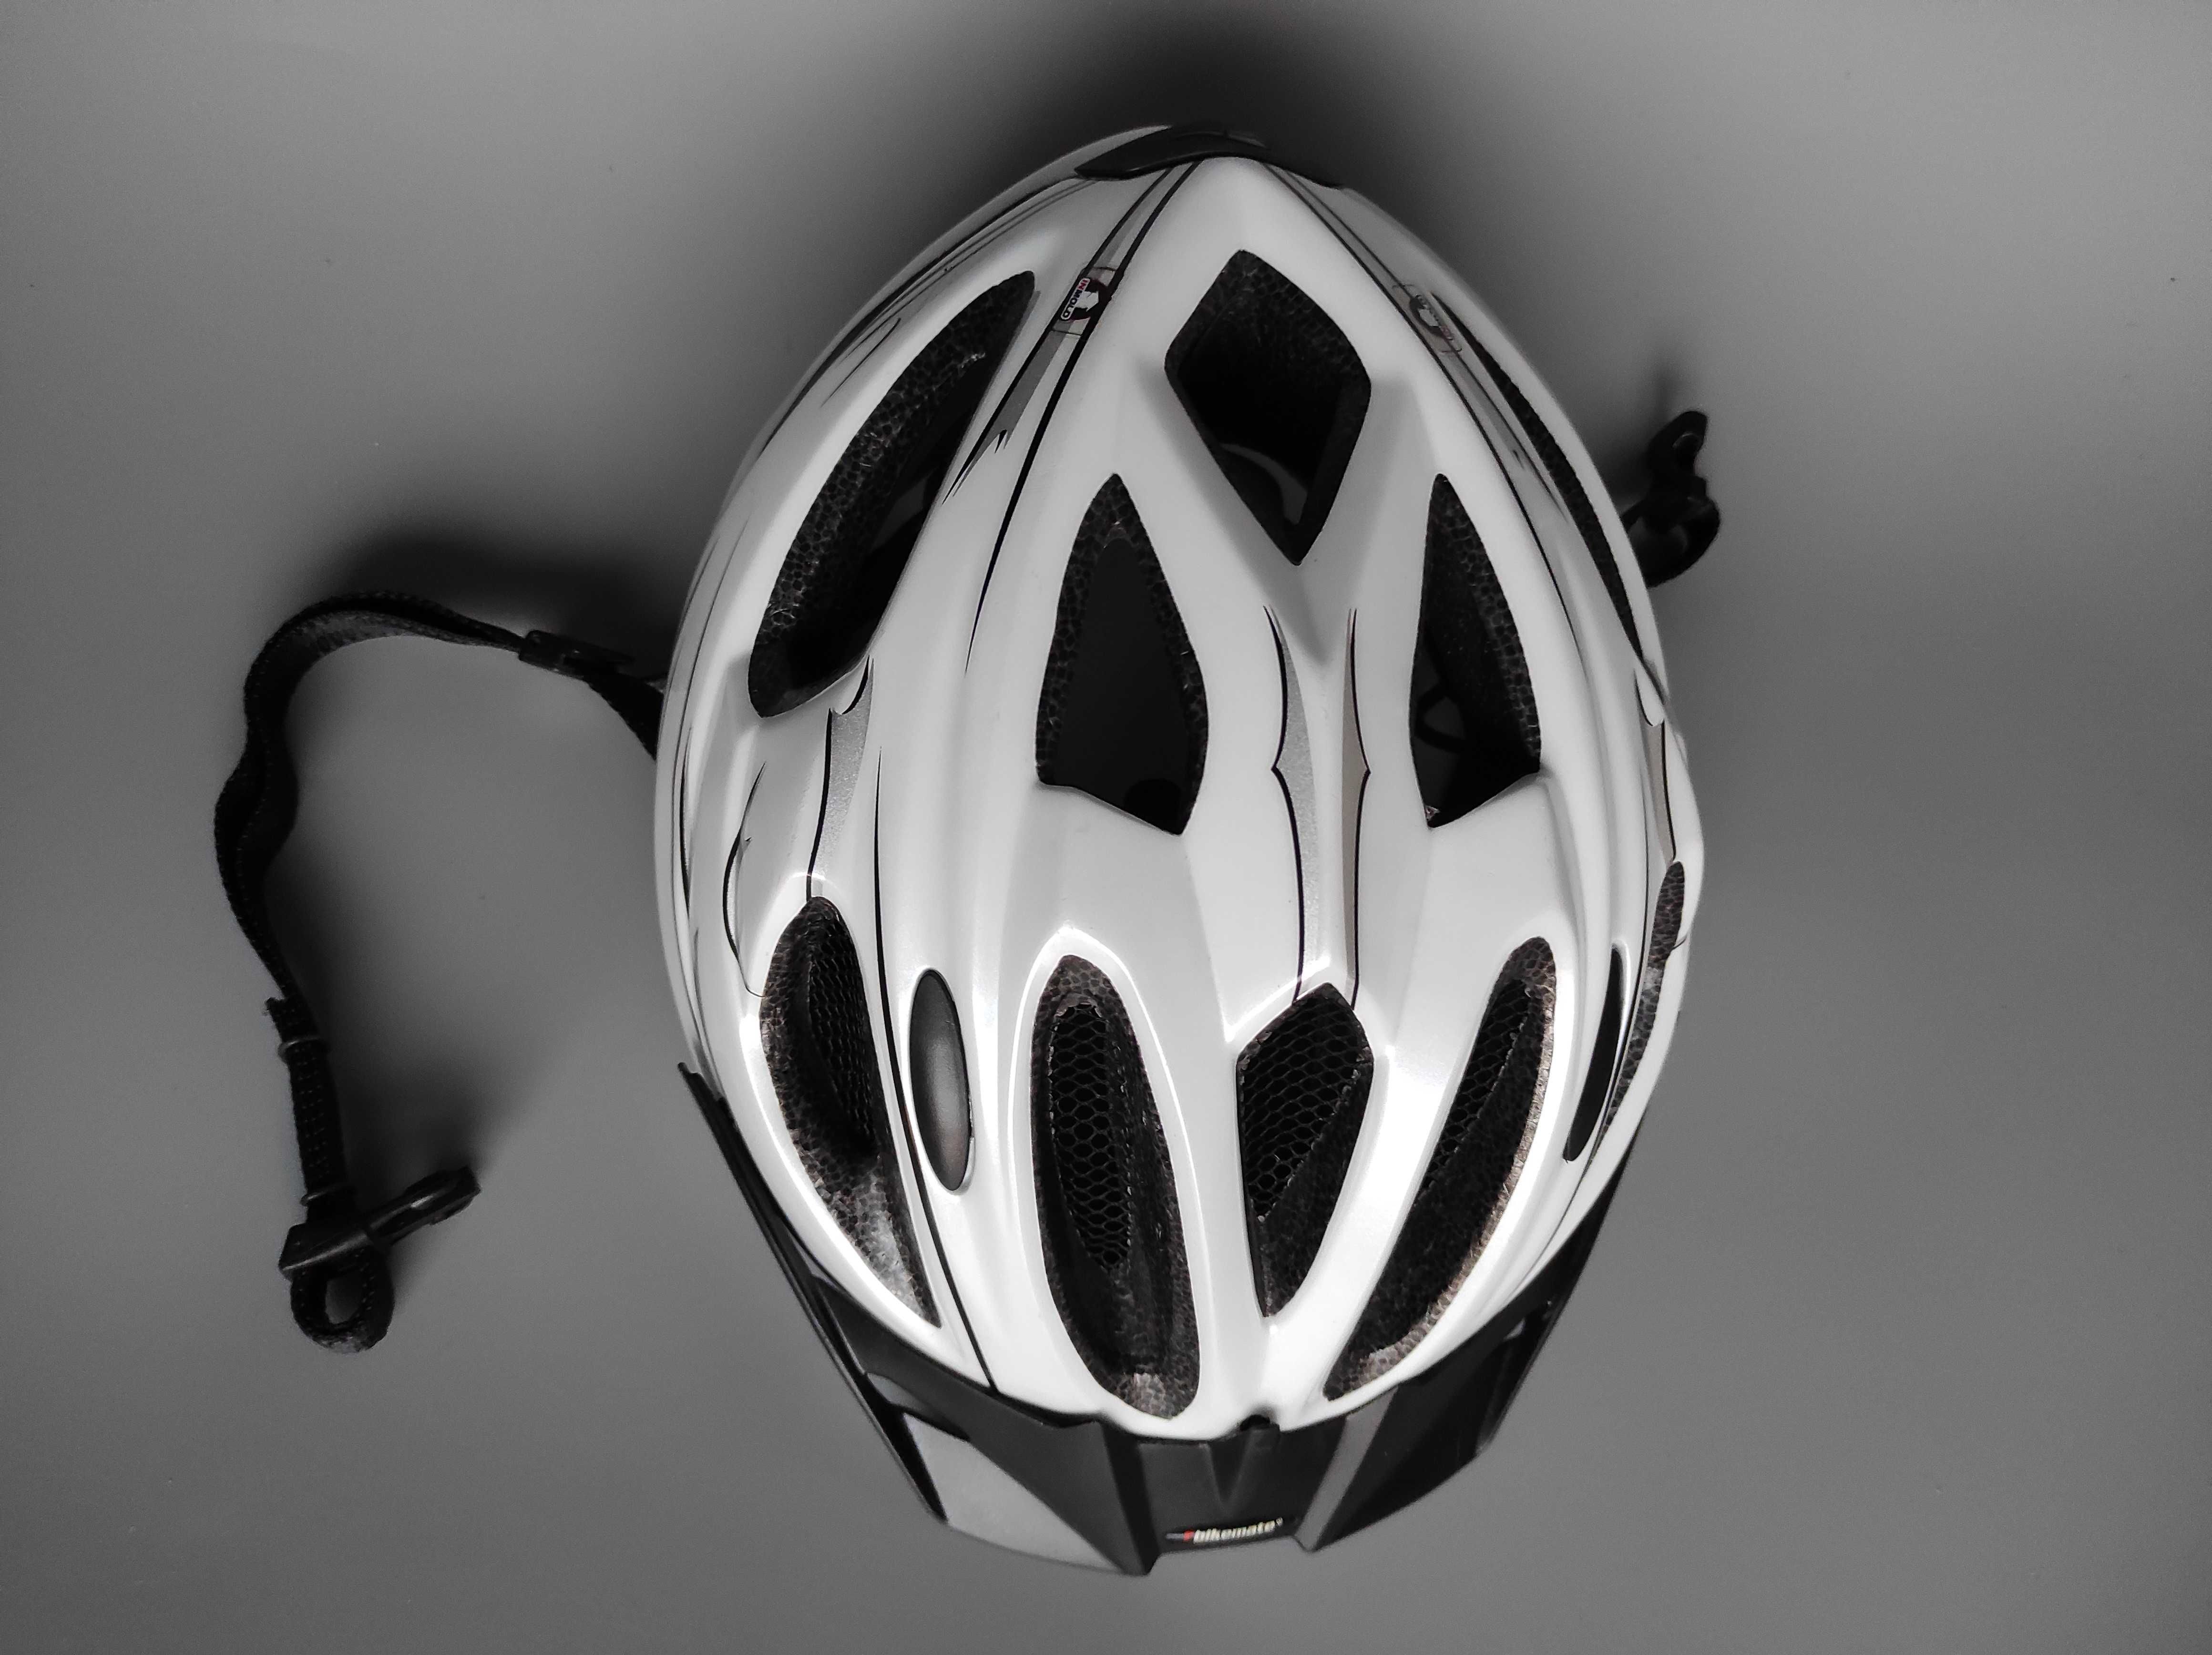 Шлем Sportivo Biker Professional, размер L/XL 59-65см, велосипедный